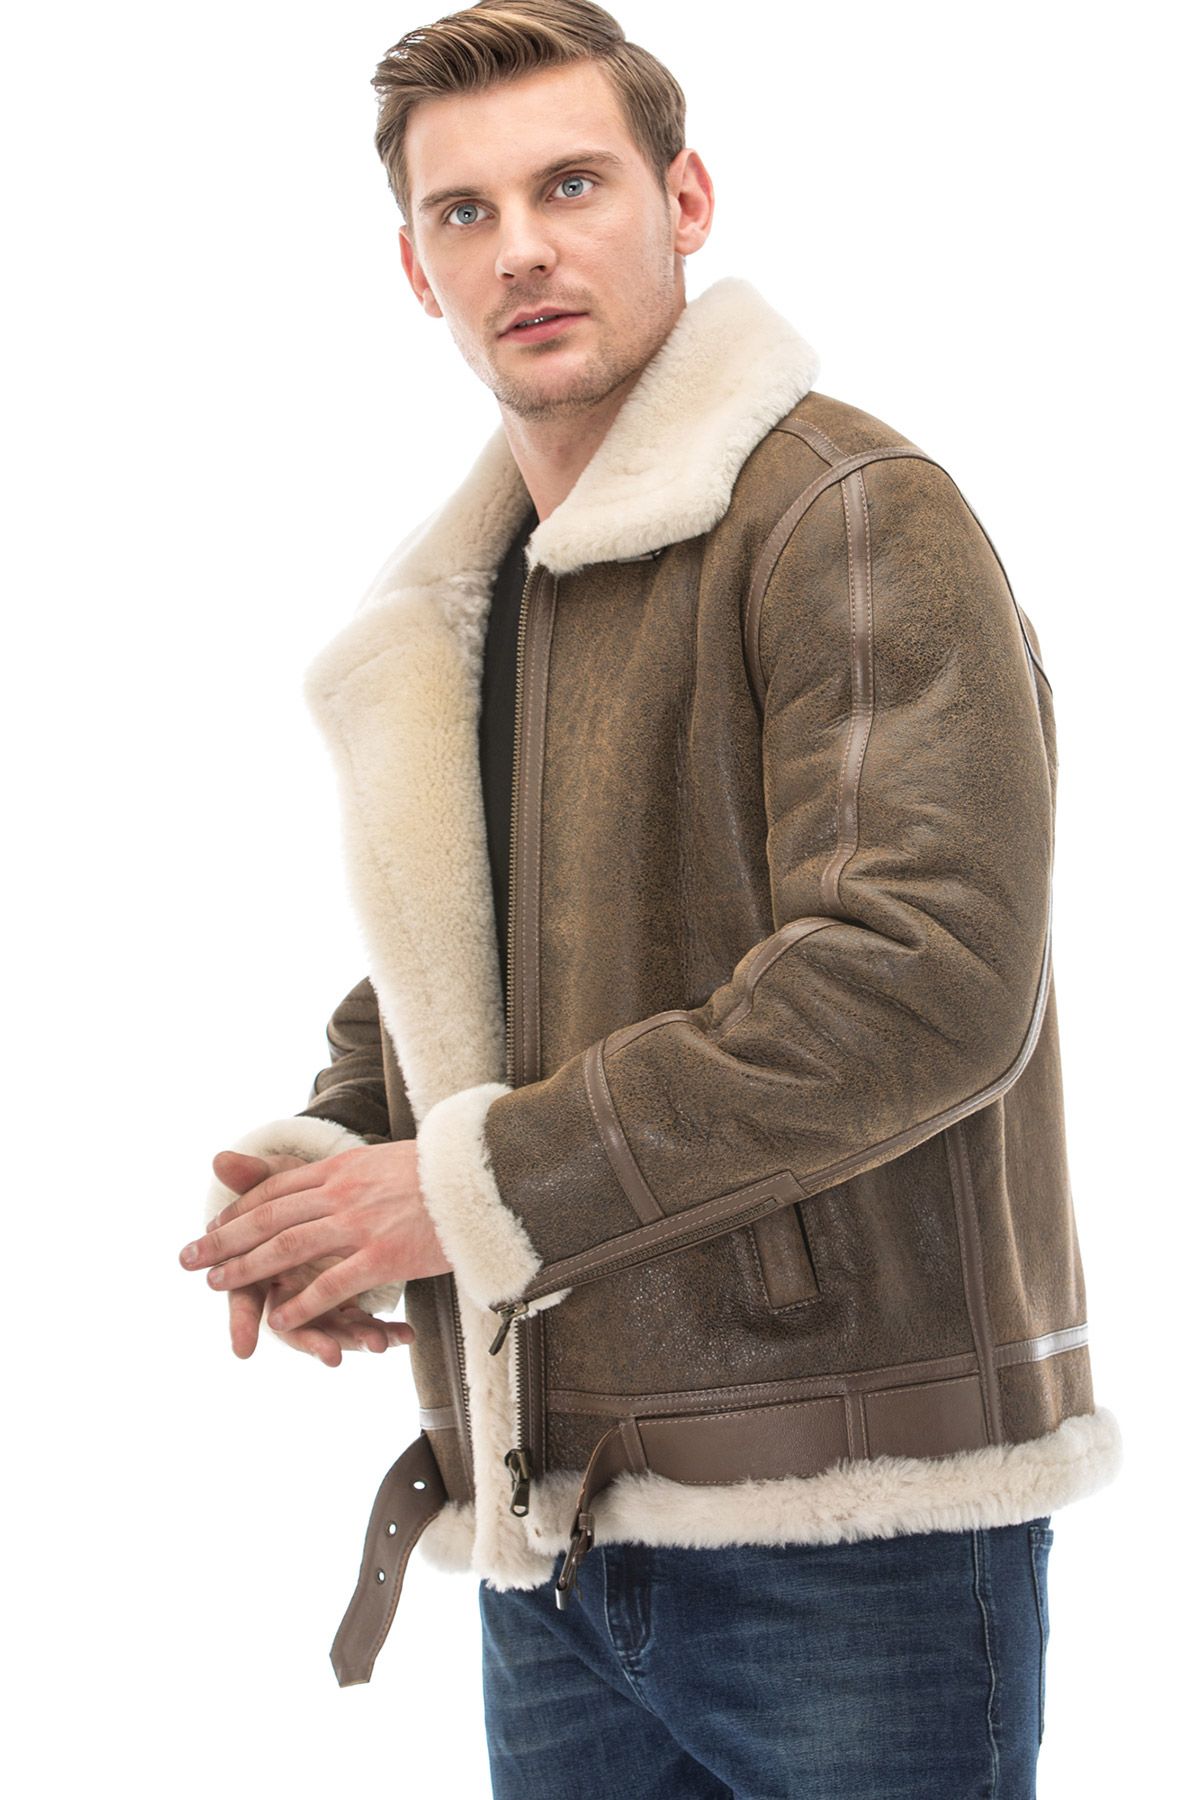 Men's sheepskin jacket